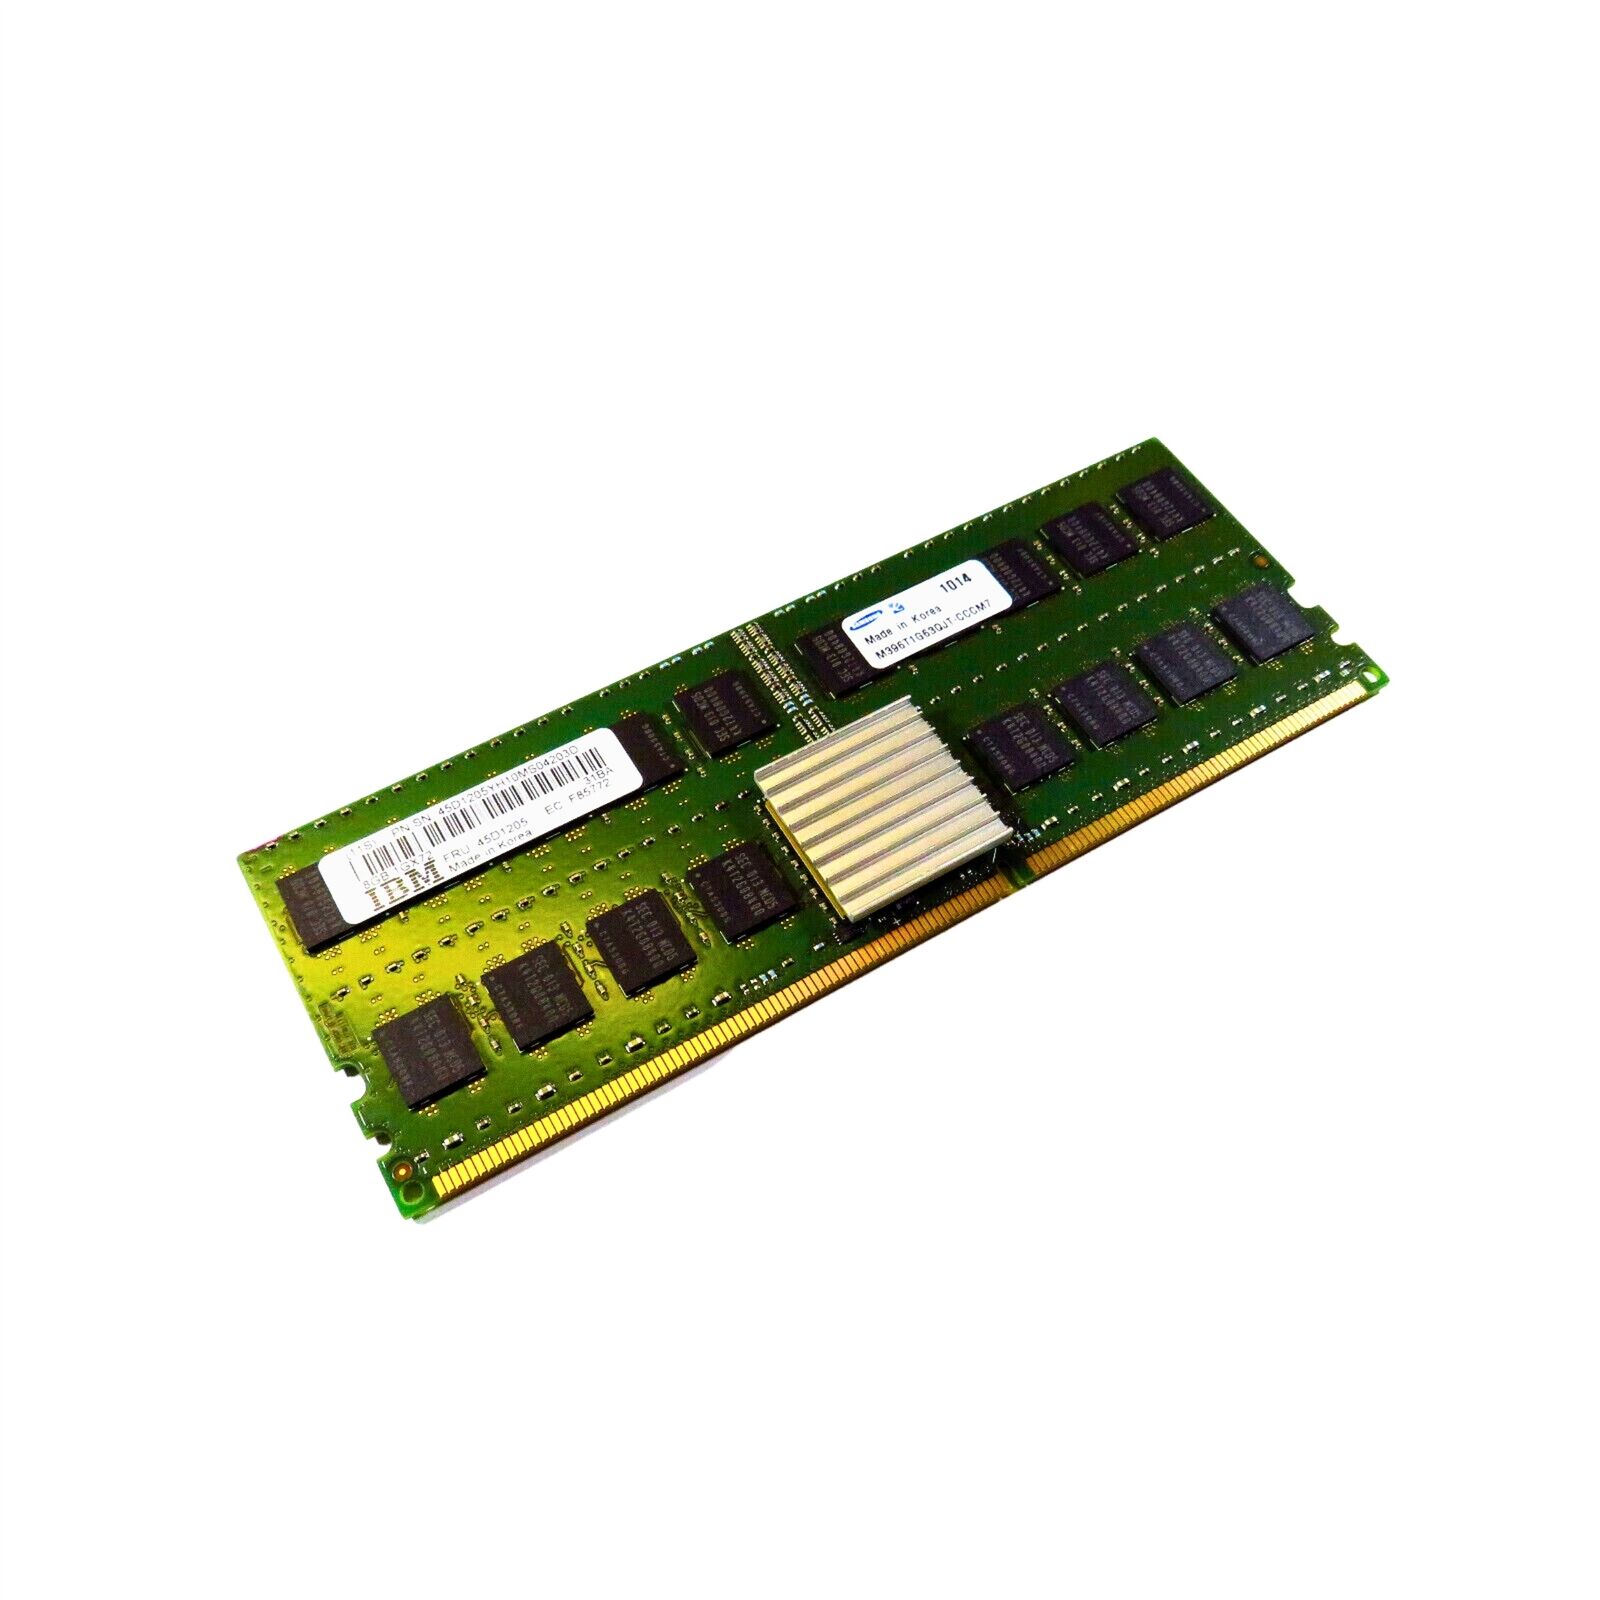 IBM 45D1205 31BA M396T1G63QJT 8GB 1GX72 Power 6 DDR2 DIMM Server Memory